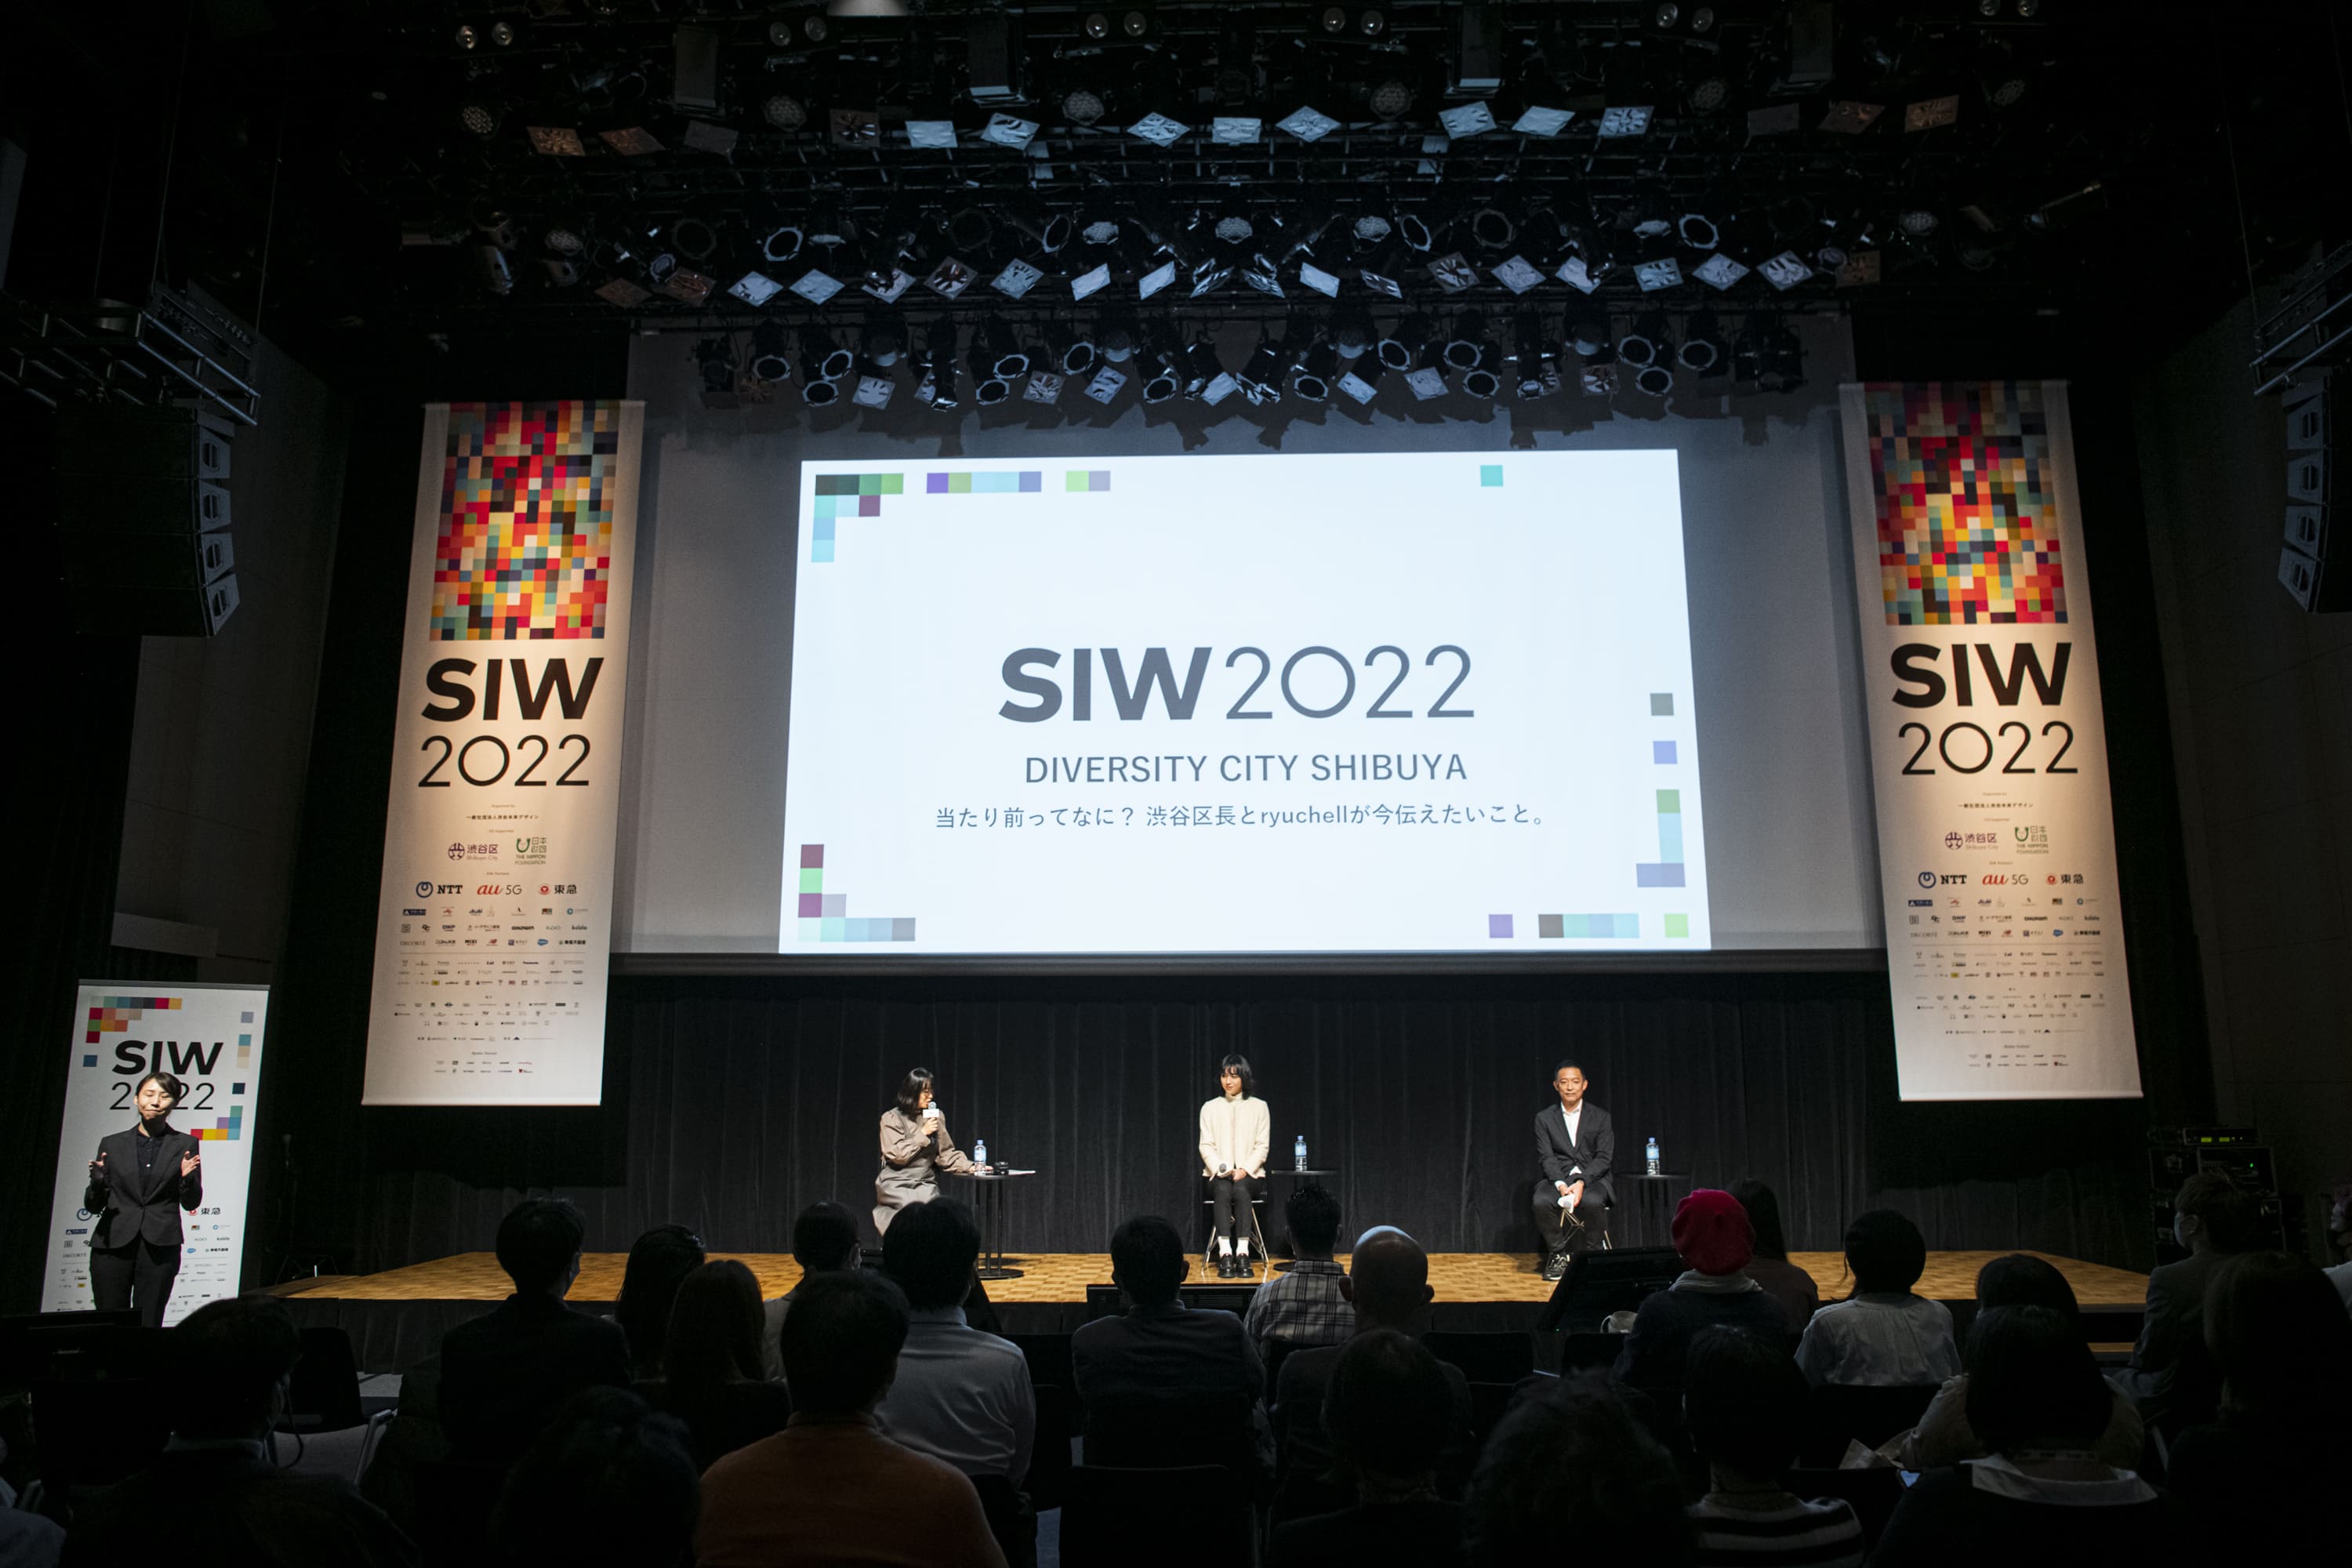 SAI2814-1 延べ13万人が参加 ！渋谷アイデア会議「SIW2022」が閉幕。80プログラムのアーカイブを無料公開中